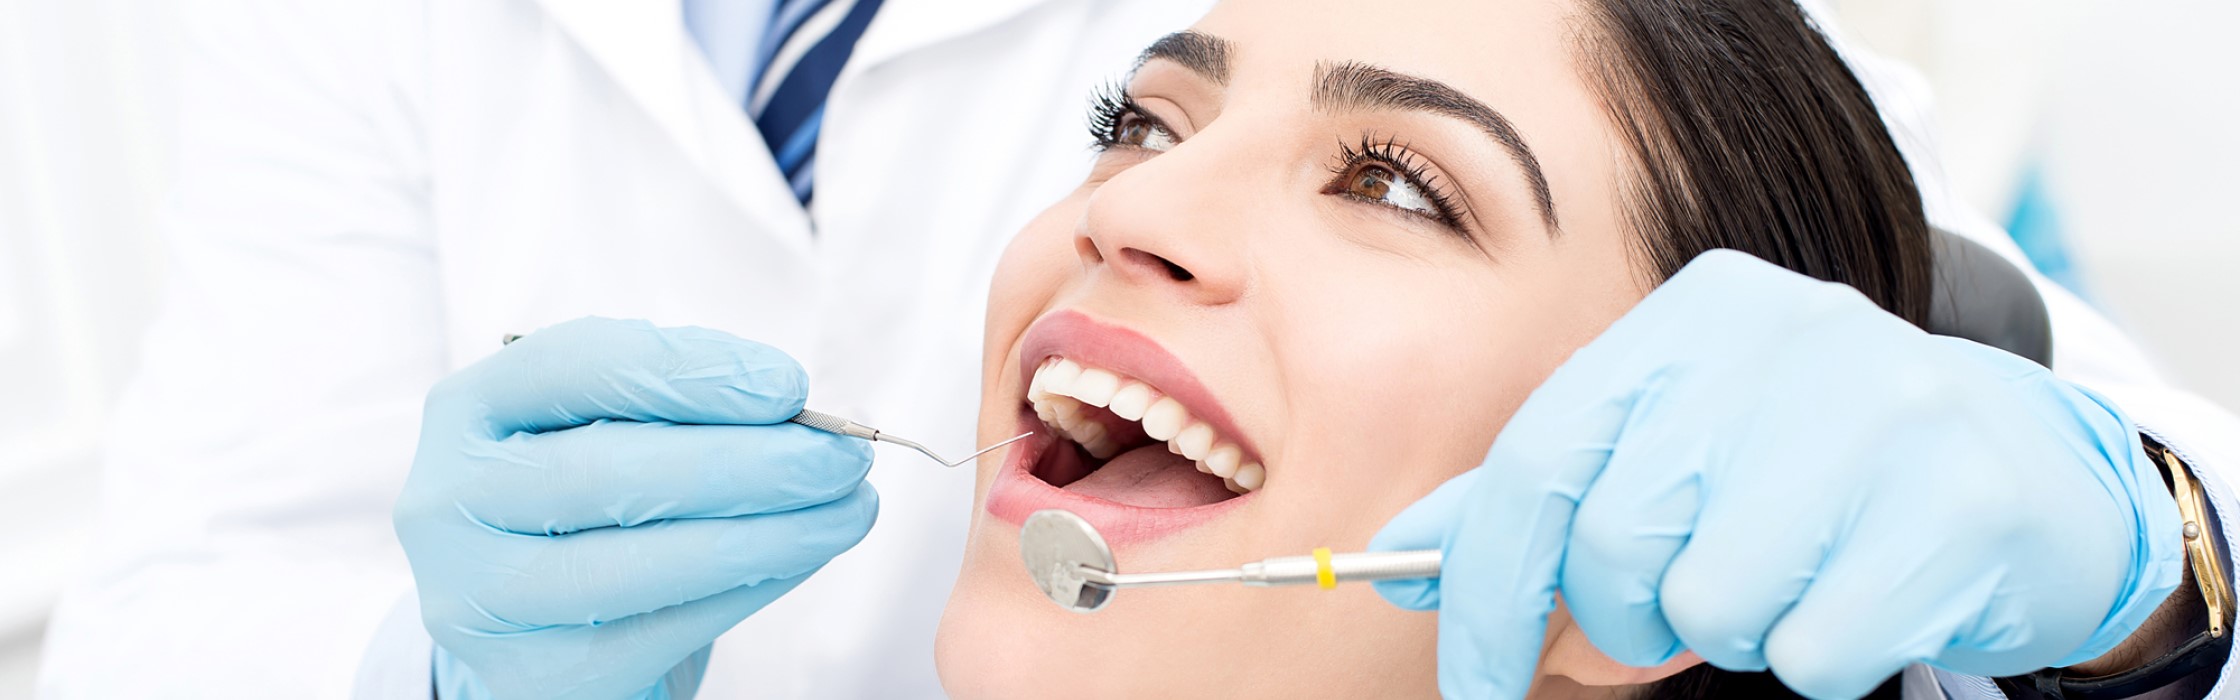 Zahnschmelz aufbauen: Zahnschmelz-Reparatur beim Zahnarzt